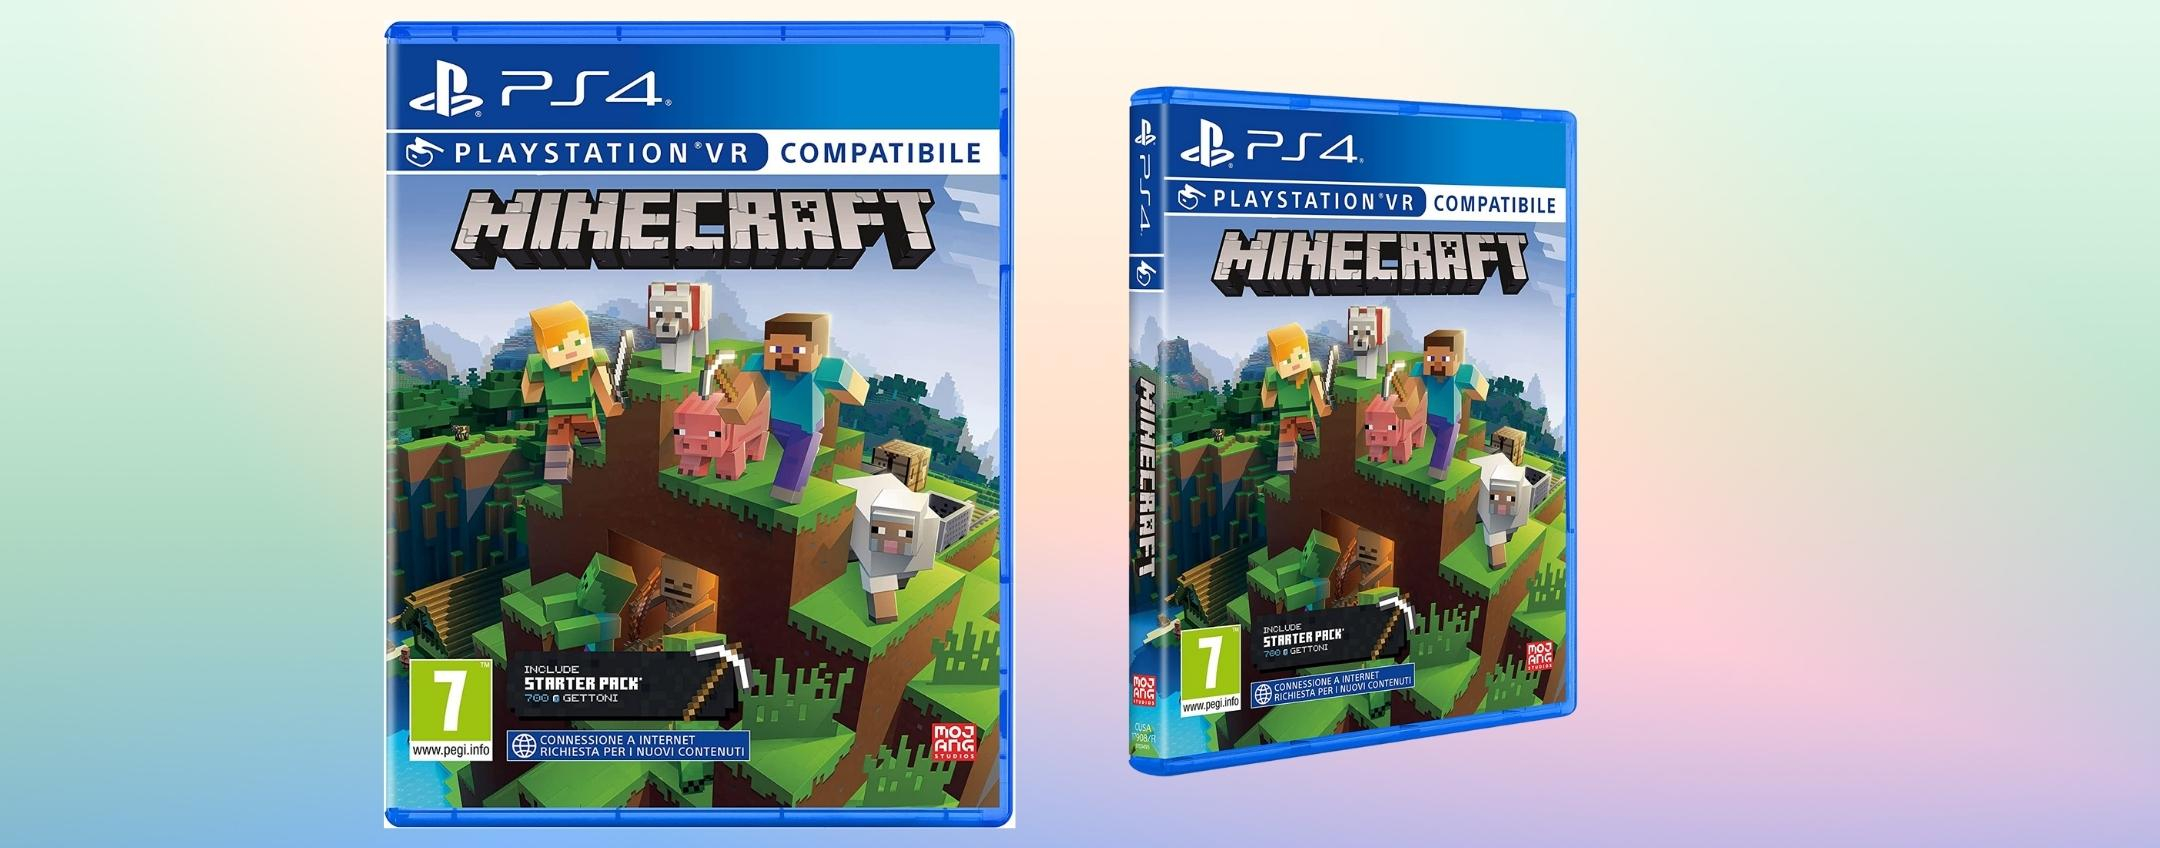 Minecraft Starter Pack PS4: è arrivata l'ora di entrare nel mondo PIXEL